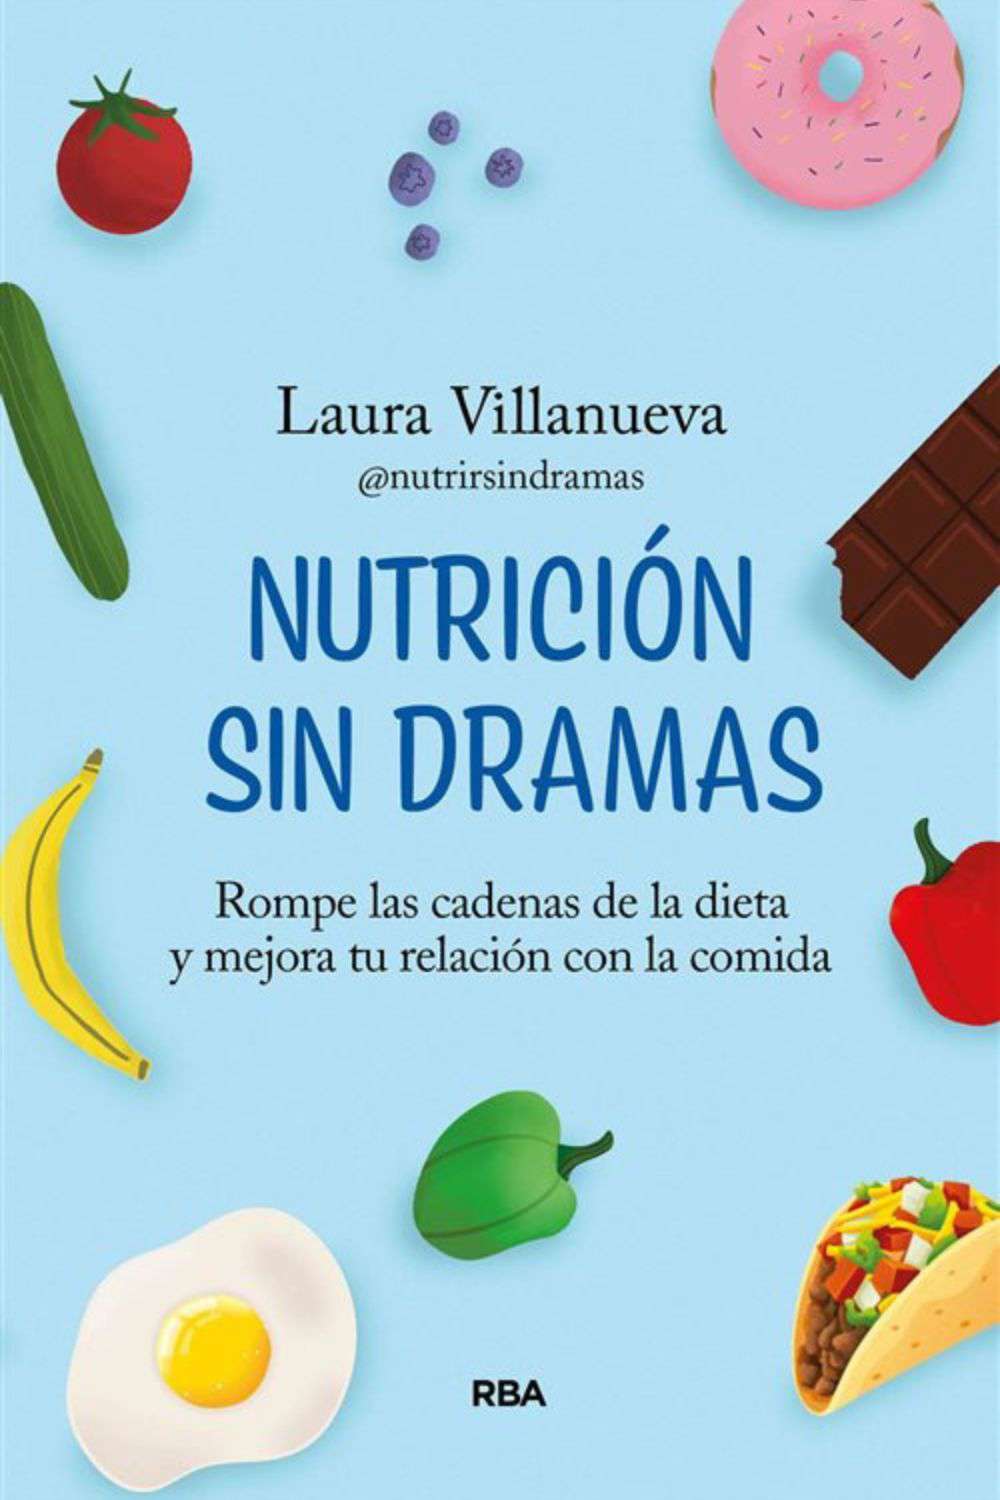 'Nutrición sin dramas' Laura Villanueva